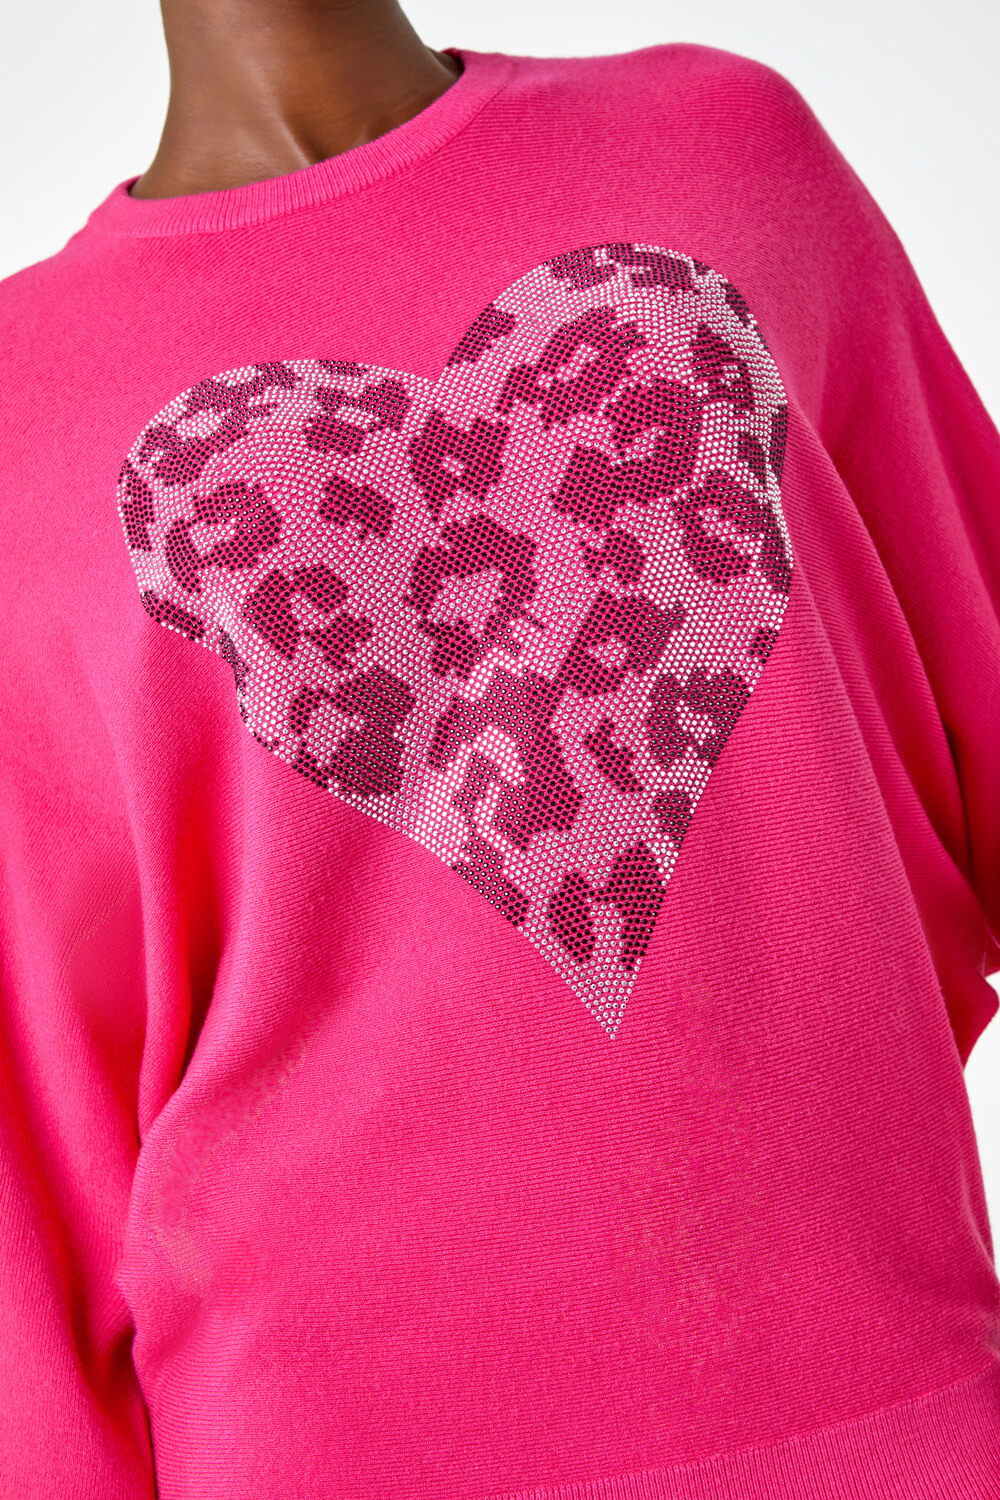 PINK Embellished Animal Heart Print Jumper, Image 5 of 5